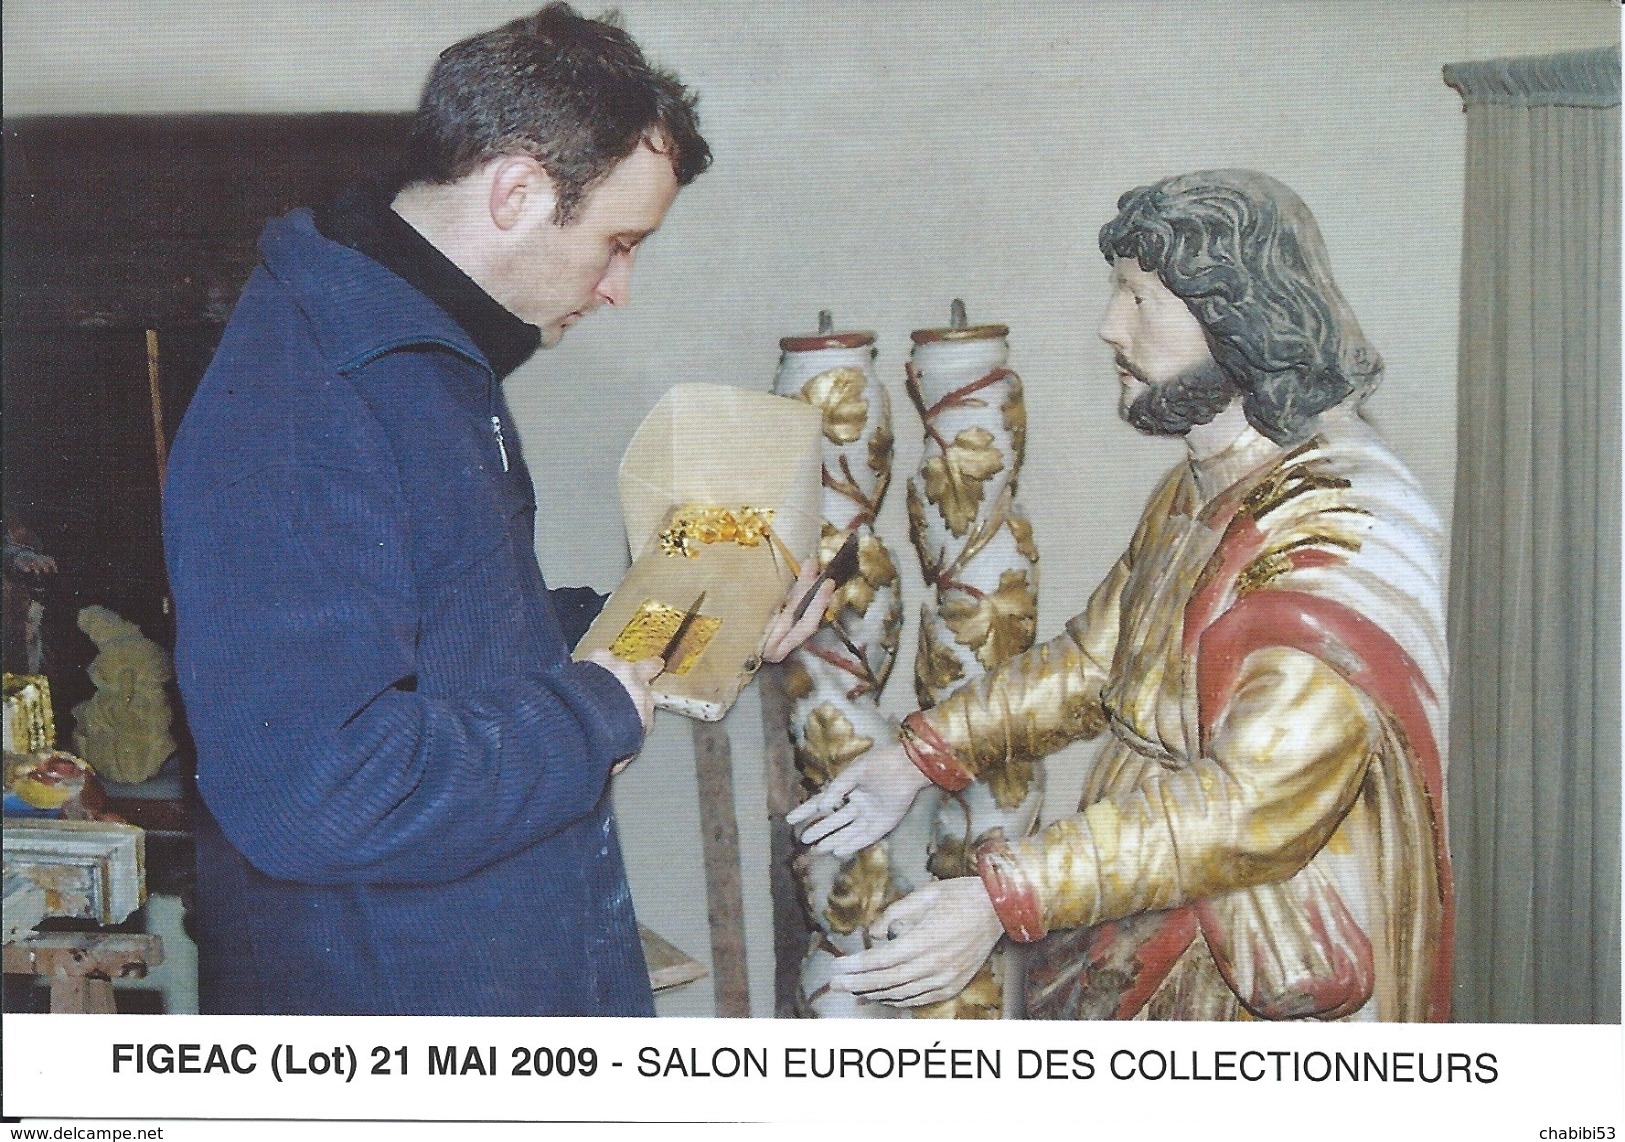 46 - FIGEAC - SALON EUROPEEN DES COLLECTIONNEURS - MAI 2009 - Bourses & Salons De Collections